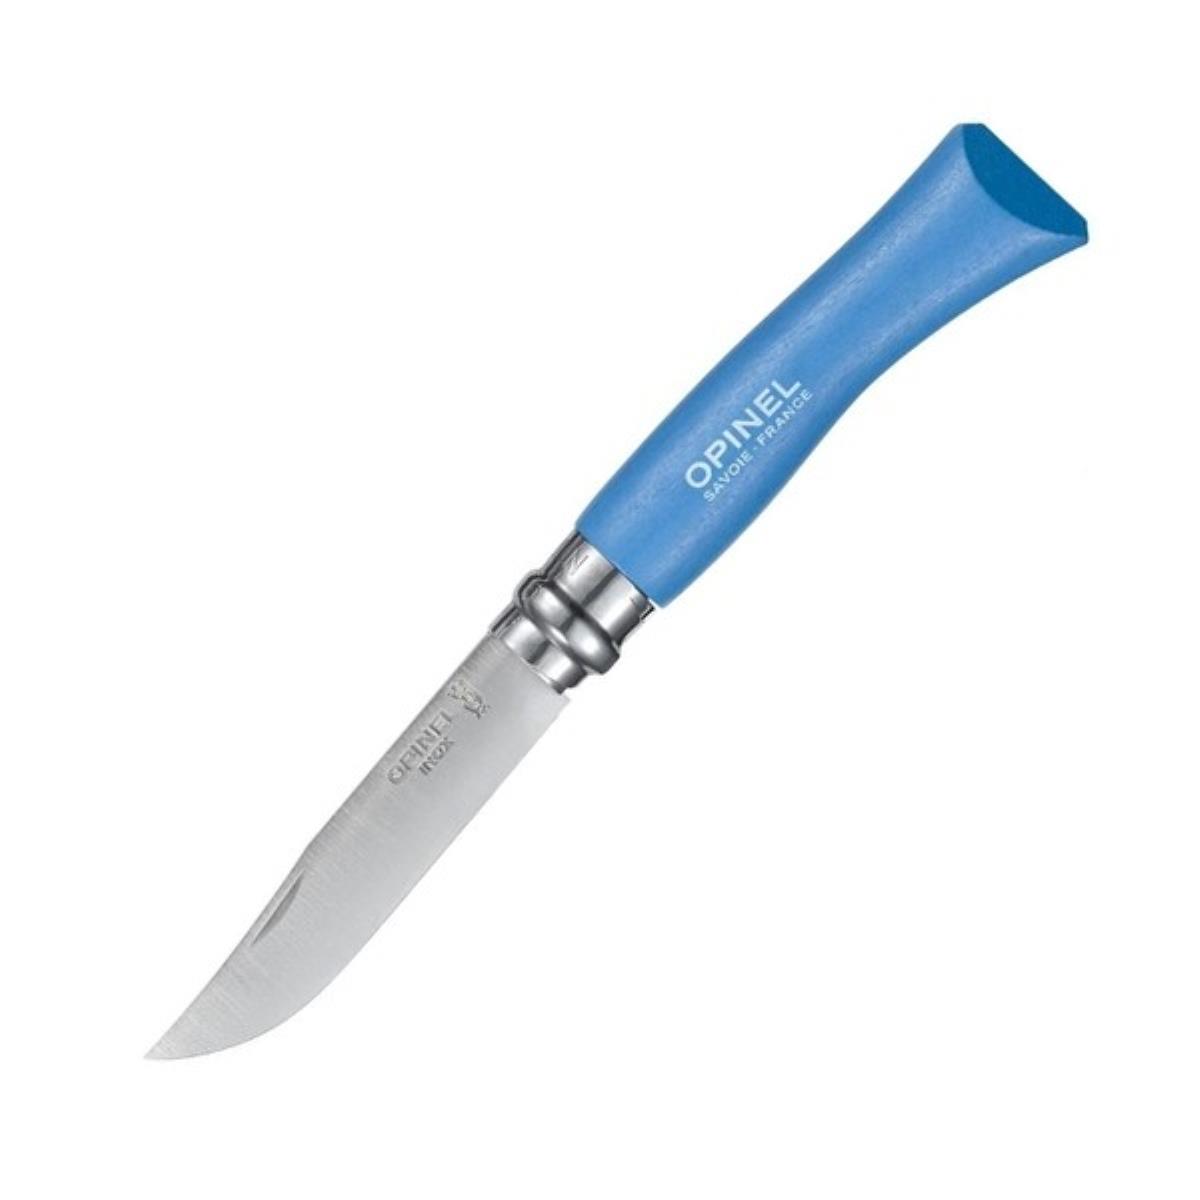 Нож №7 VRI Colored Tradition Sky blue нерж. сталь, рукоять граб, длина клинка8см (голубой) OPINEL доска разделочная для подачи с ручкой adelica 34×19 5×2 см тёмный граб